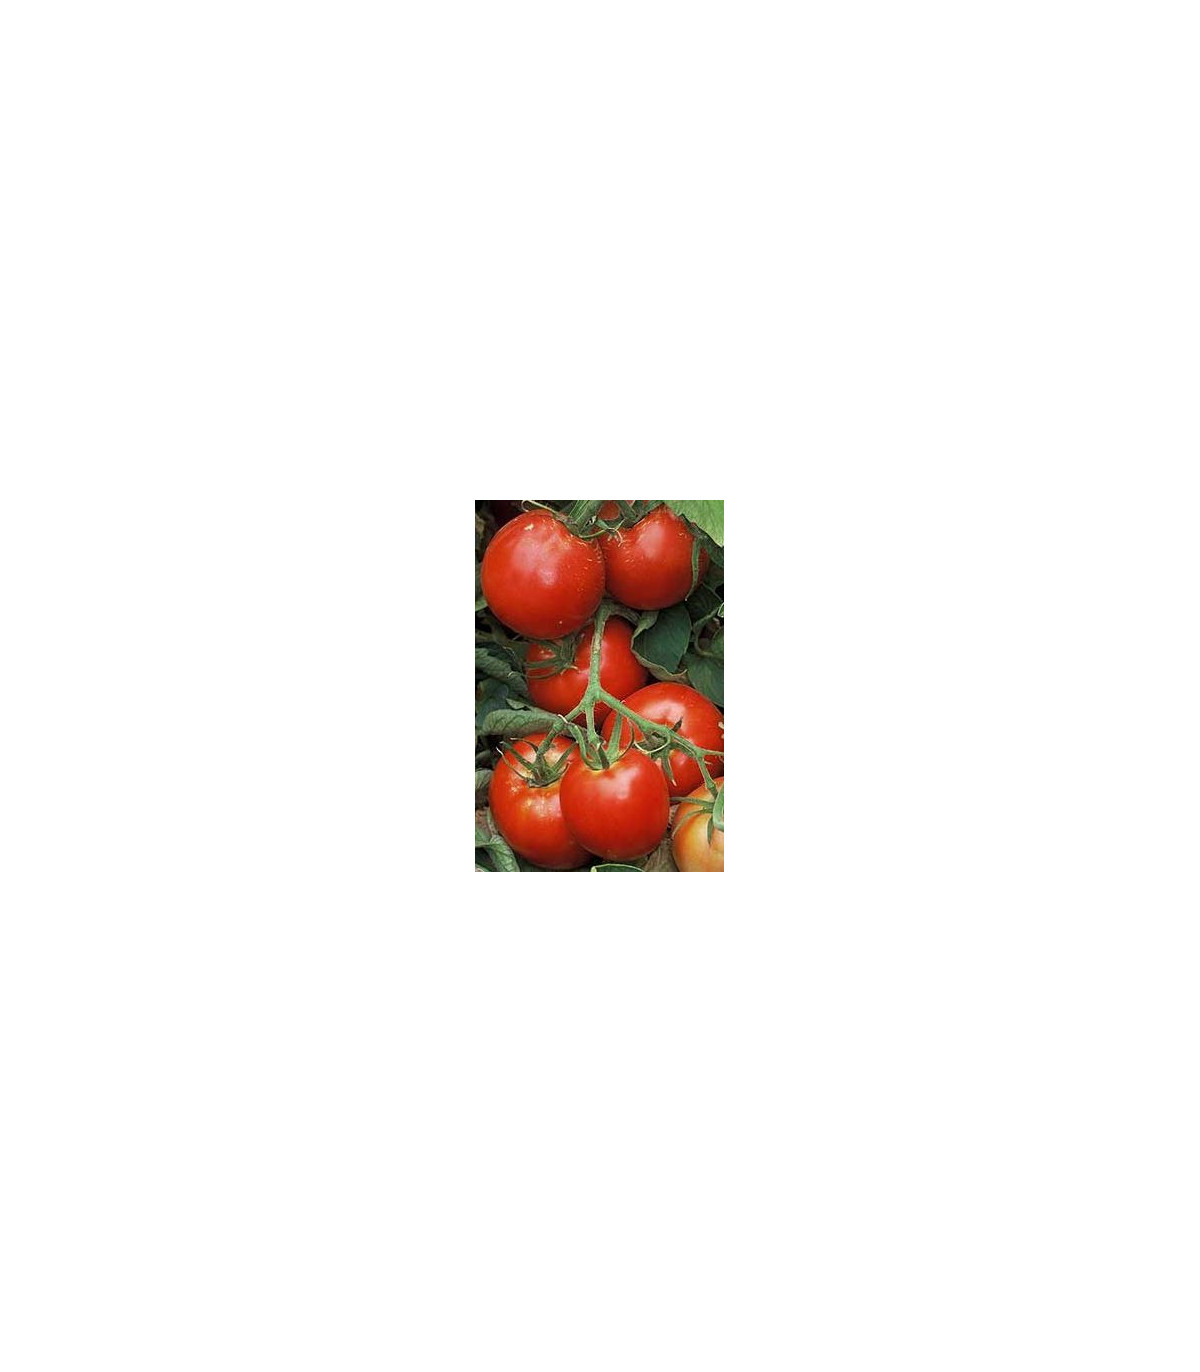 Paradajka Legenda - predaj semien rajčiakov - pôvodnej odrody paradajok - 6 ks